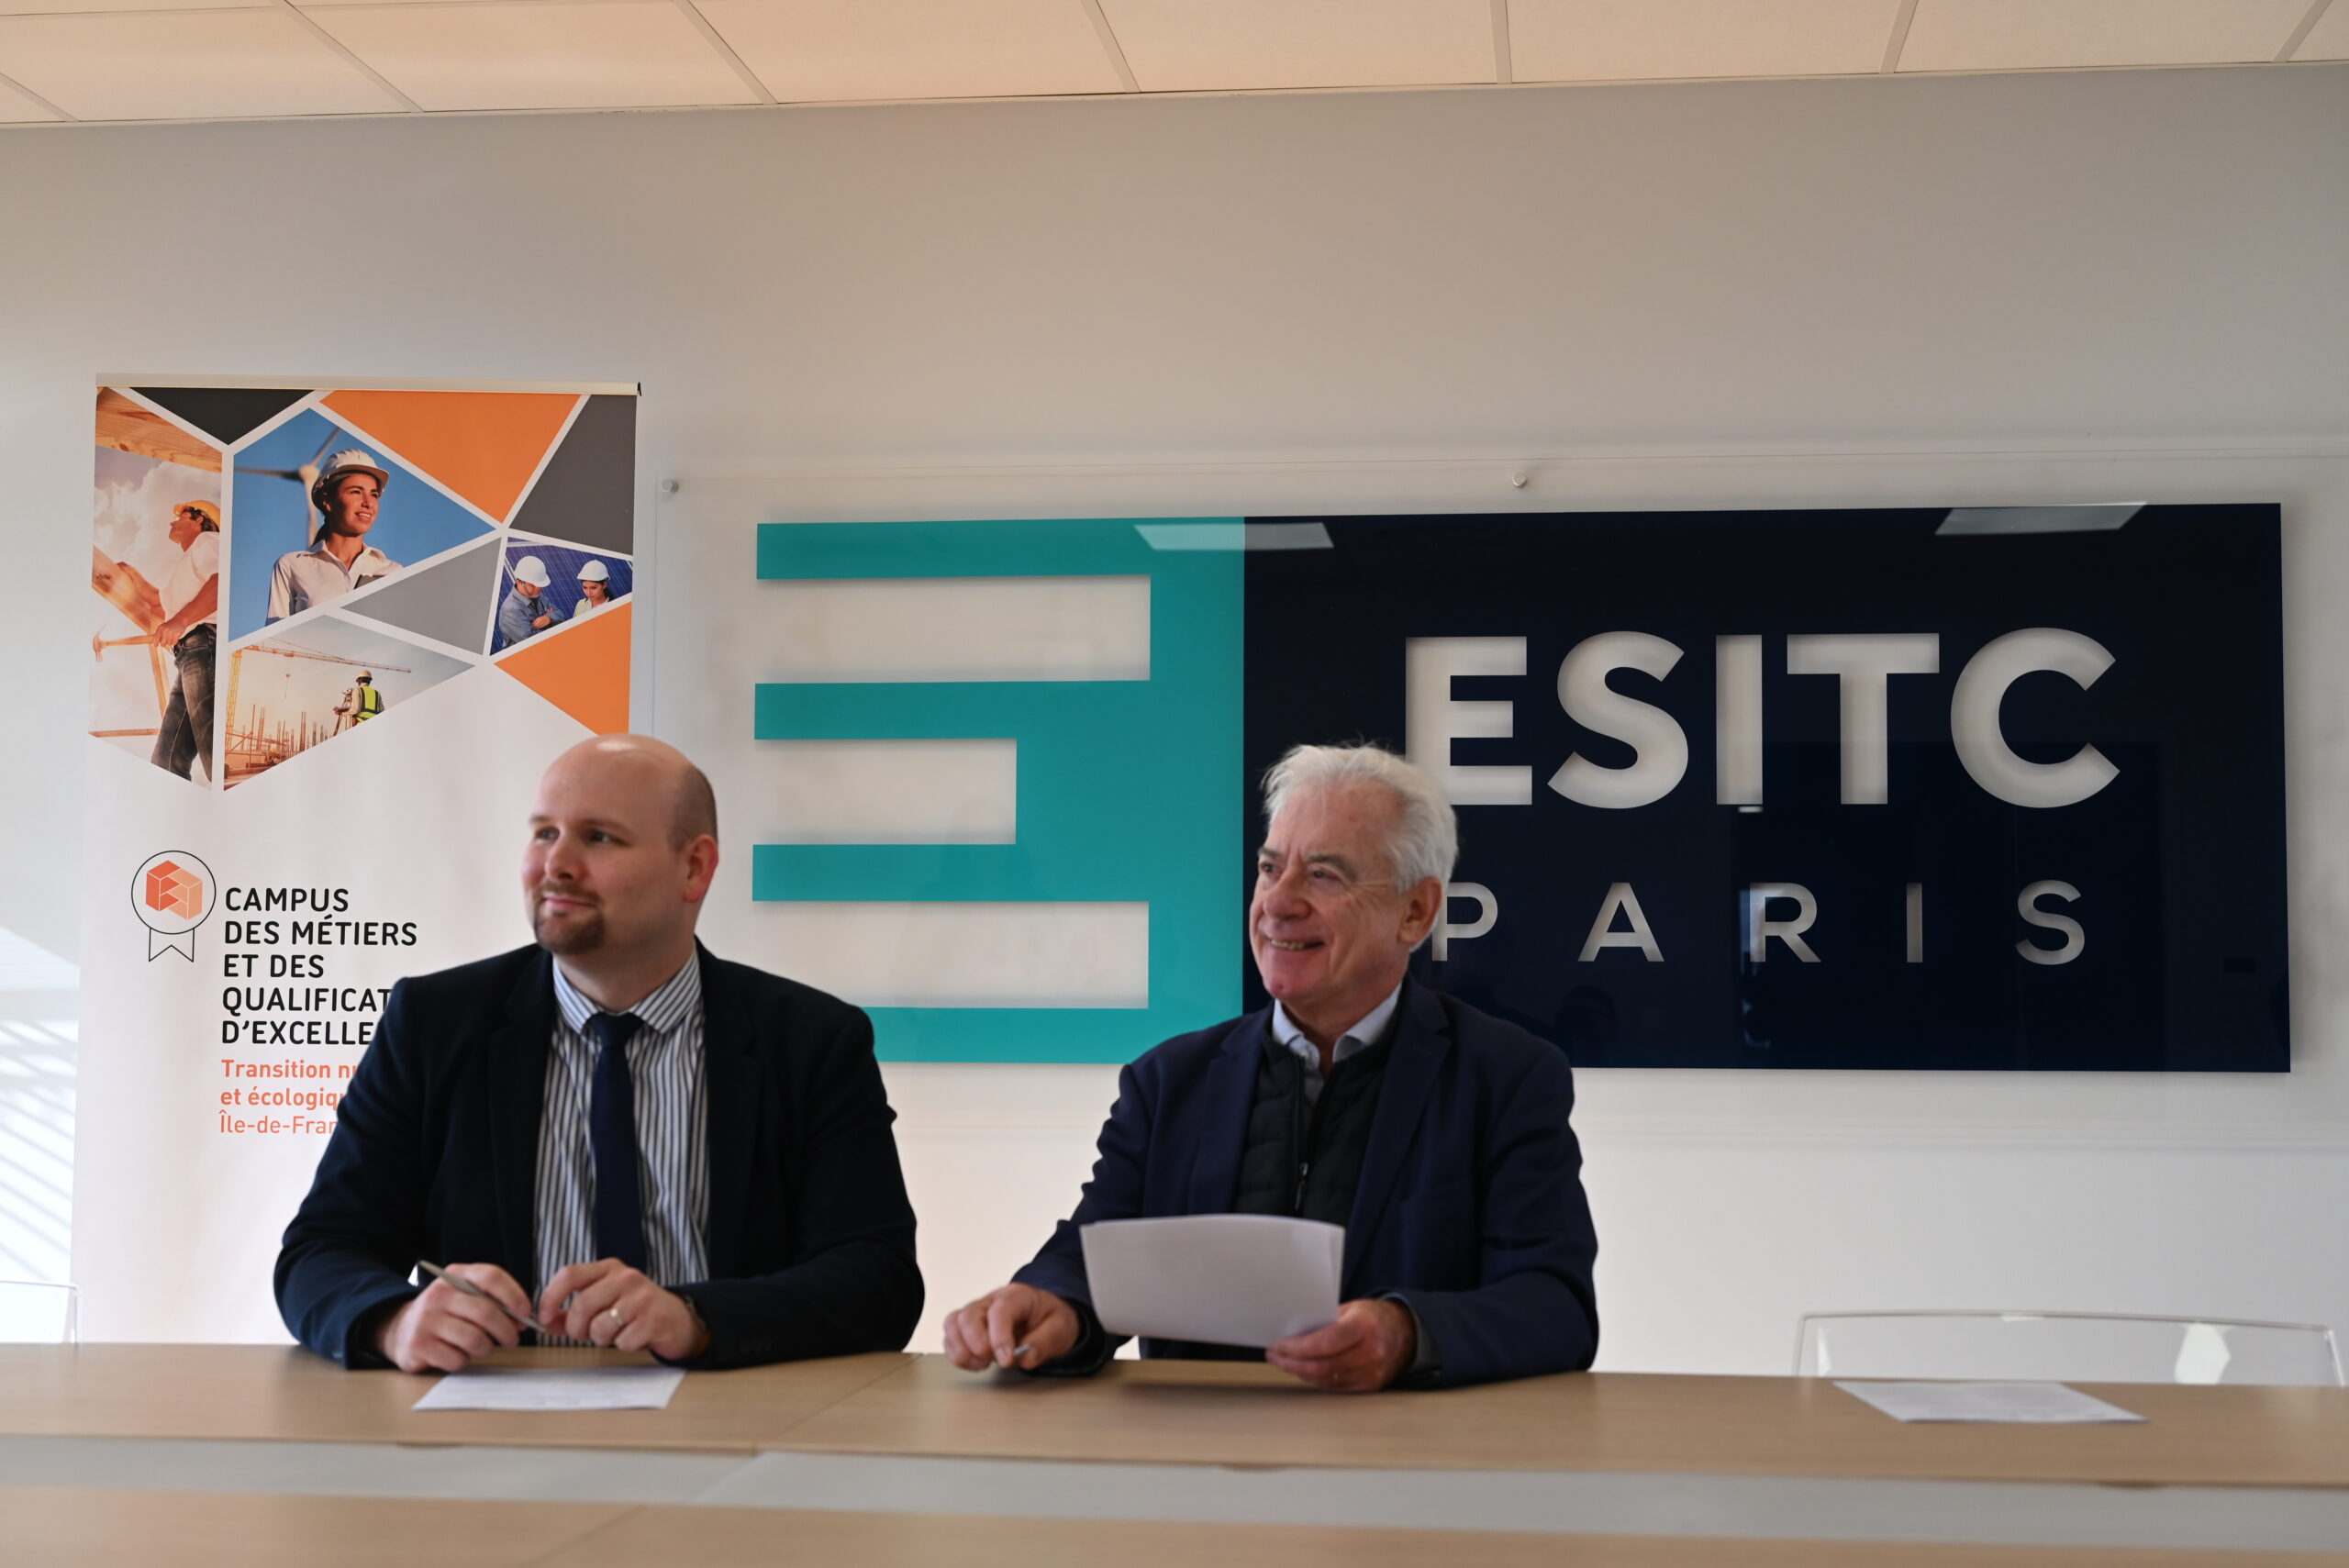 L'ESITC Paris et le Campus des Métiers et des Qualifications d'Excellence Transition numérique et écologique de la construction Île-de-France sont officiellement partenaires.